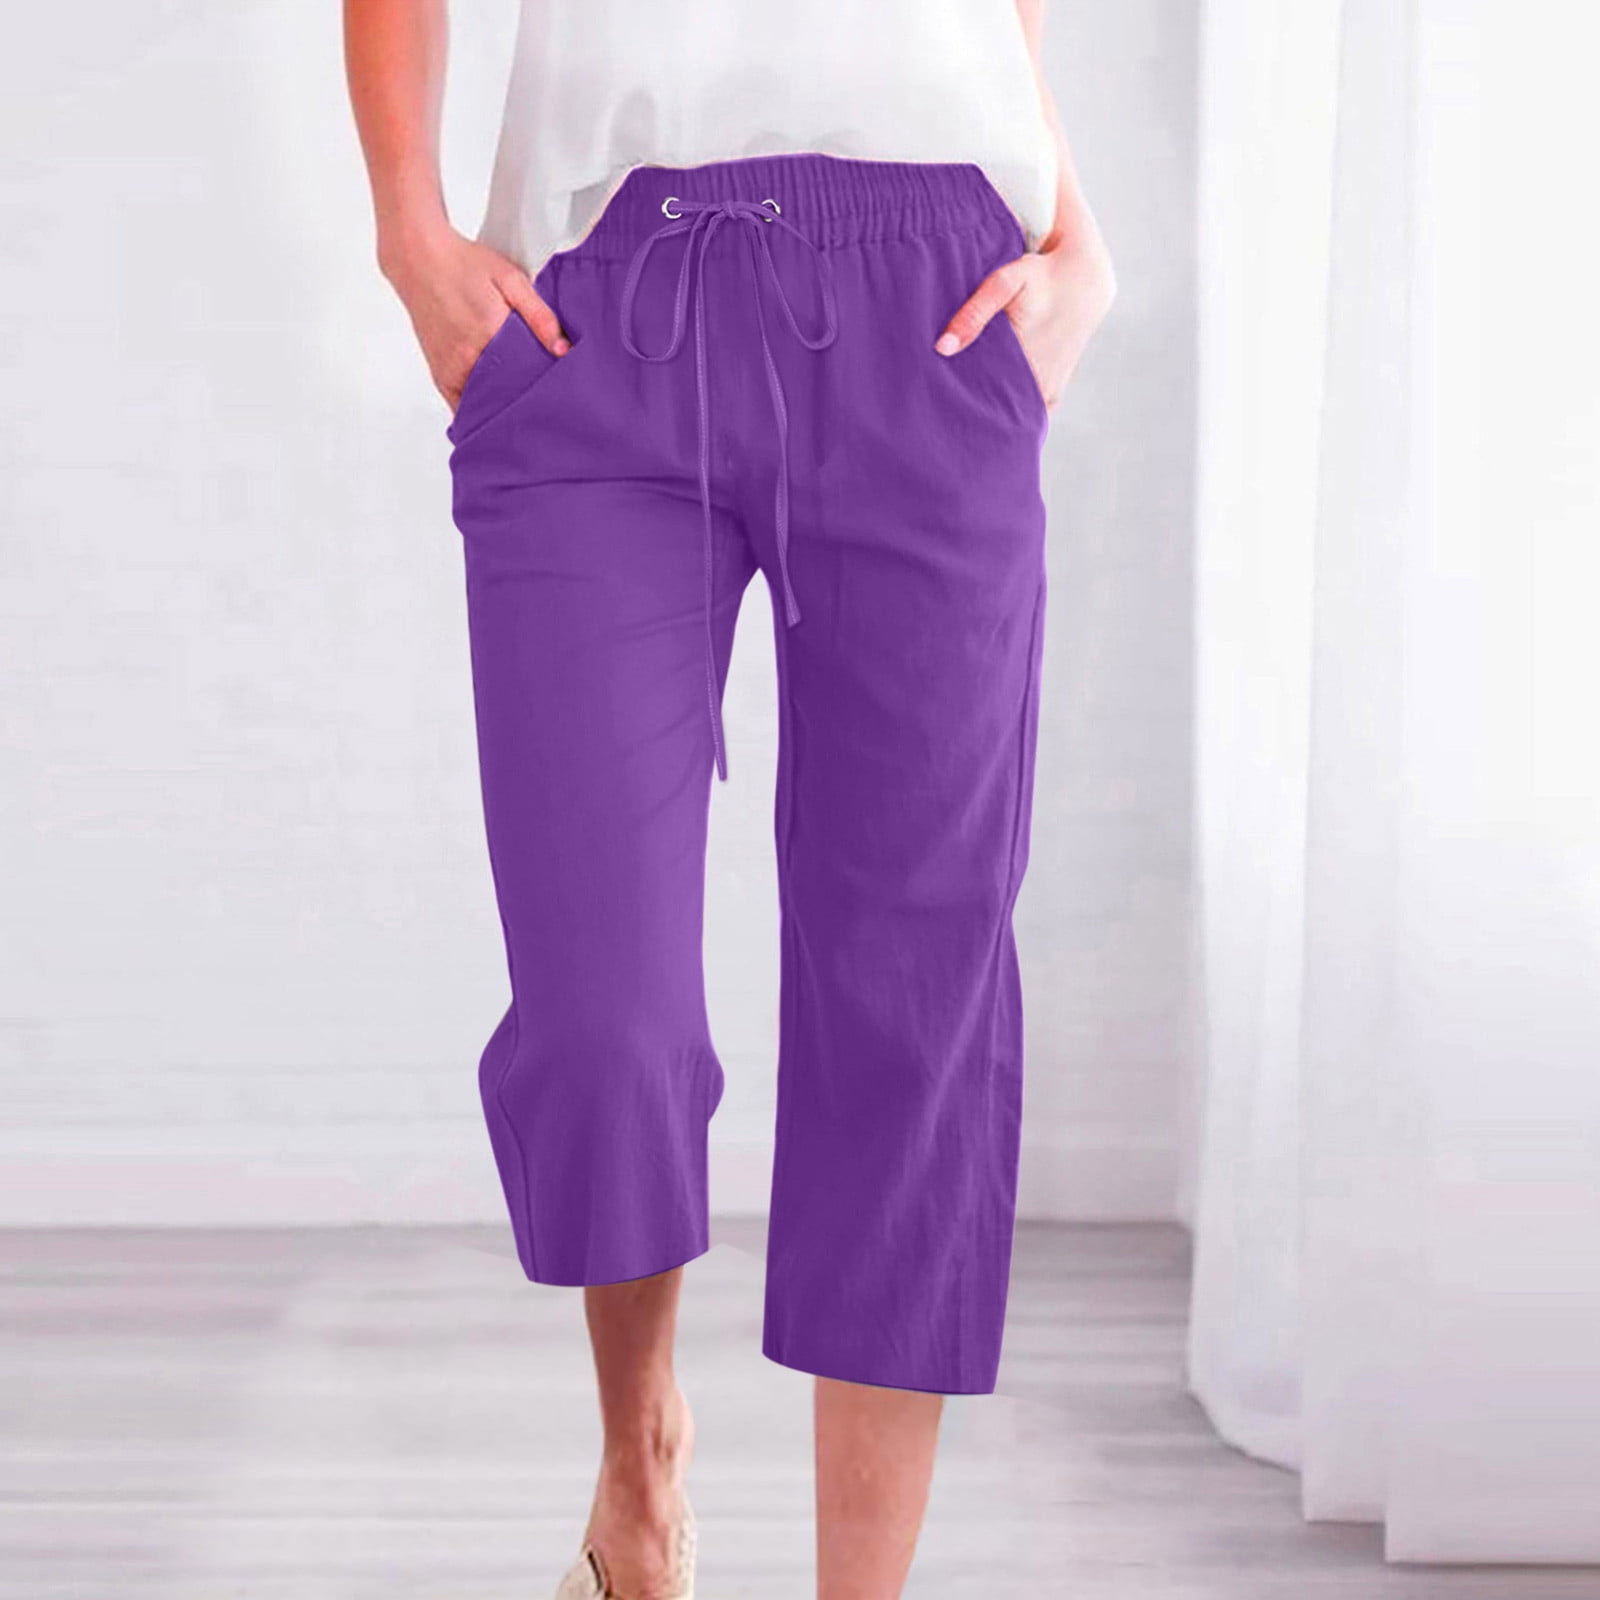 Women's Cotton Linen Capri Pants Sale Plus Size Casual Drawstring Elastic  Waist Solid Color Loose Cropped Pants Fashion Straight Wide Leg Joggers